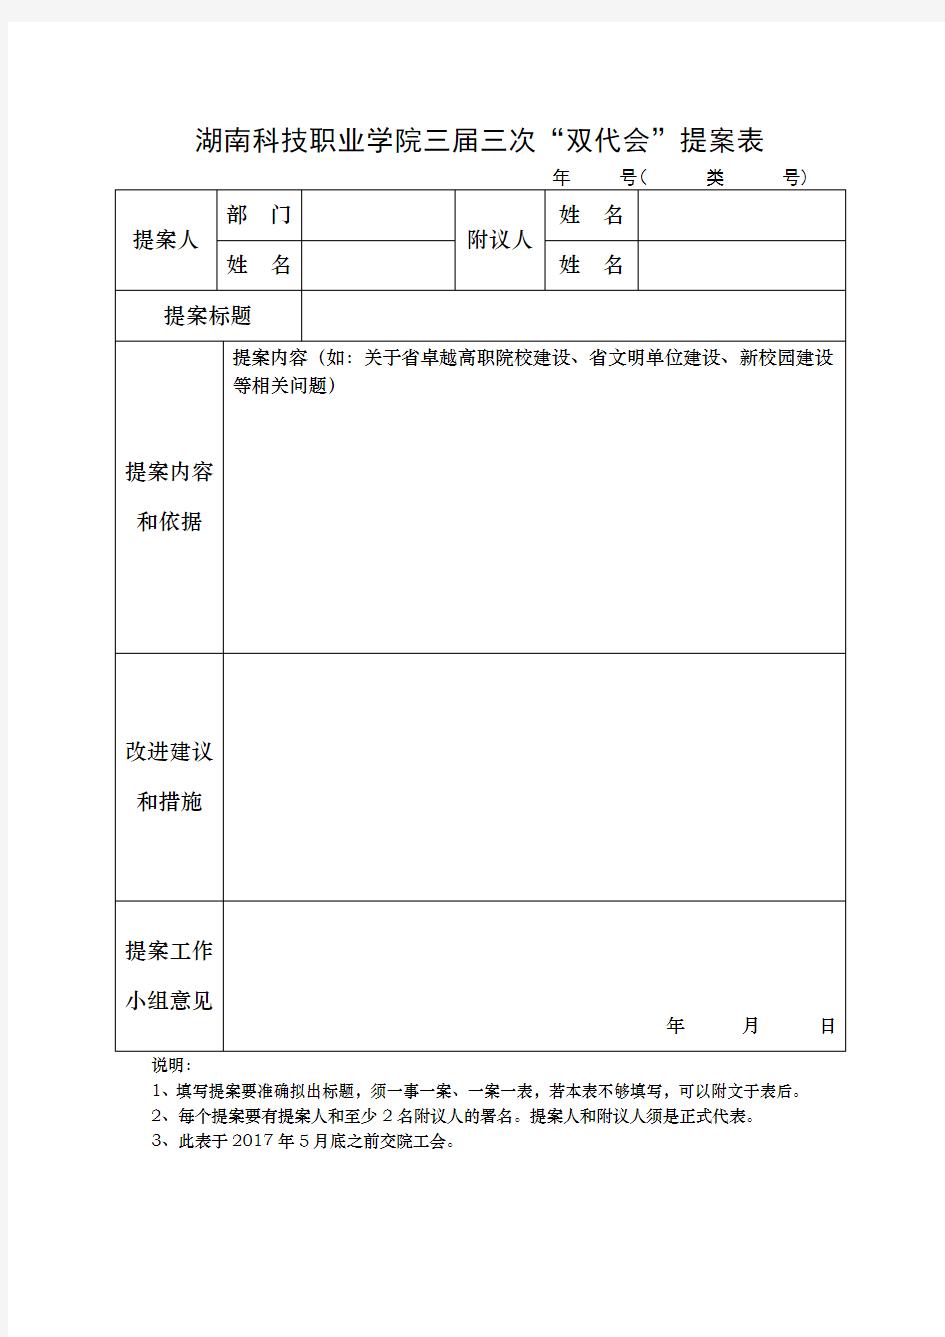 湖南科技职业学院职代会提案表(2017)